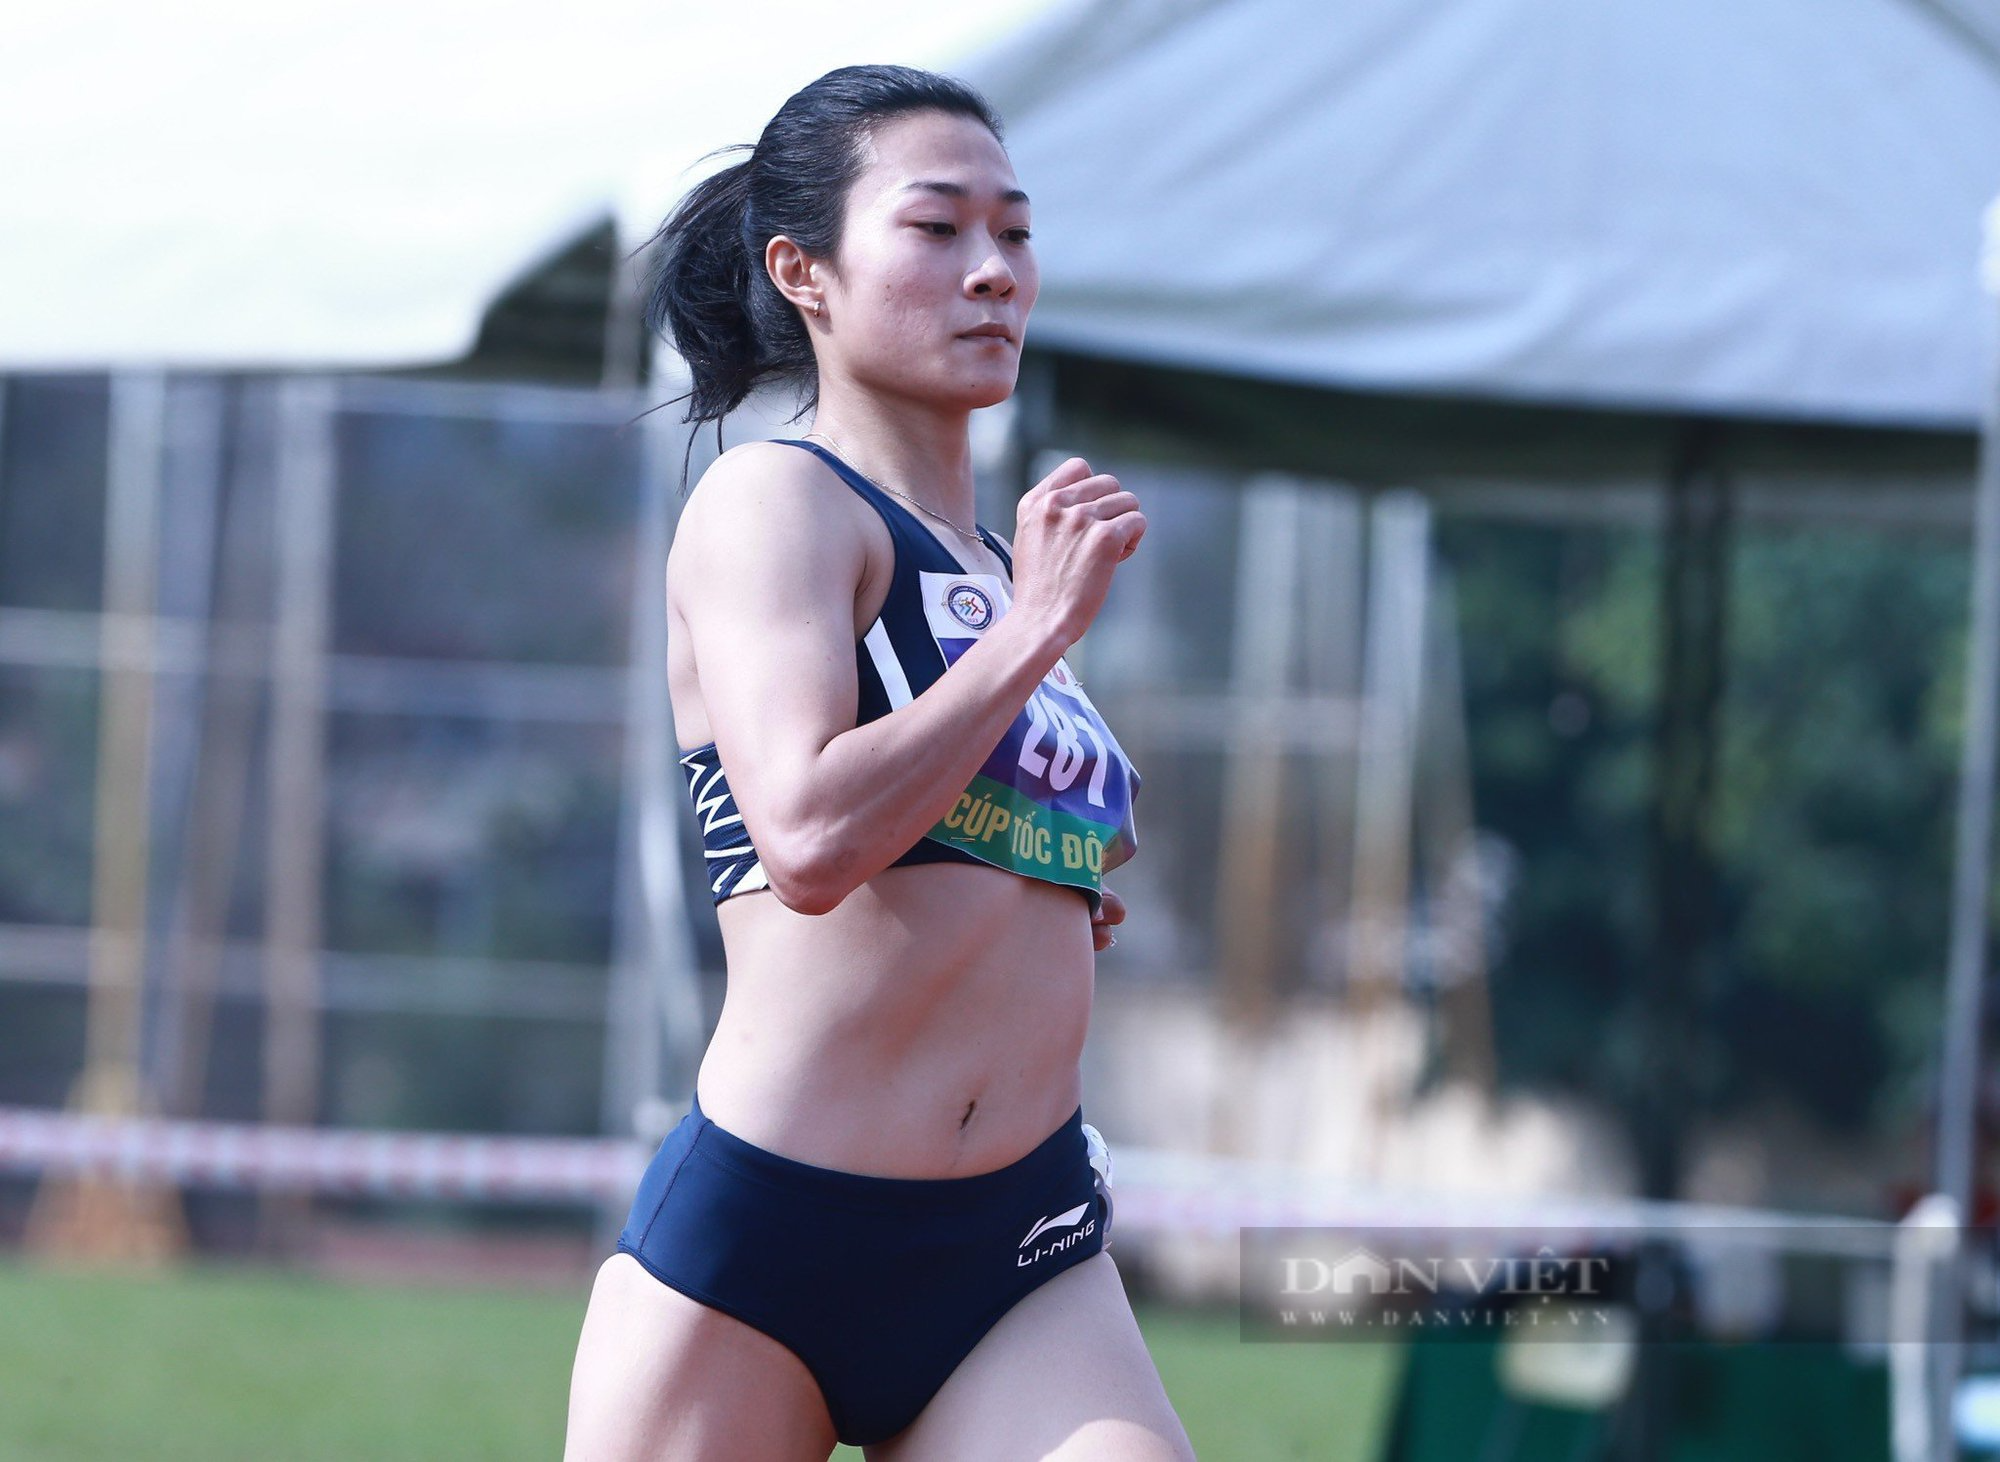 Vừa trở lại sau chấn thương Lê Tú Chinh bỏ thi chung kết 100m nữ - Ảnh 3.